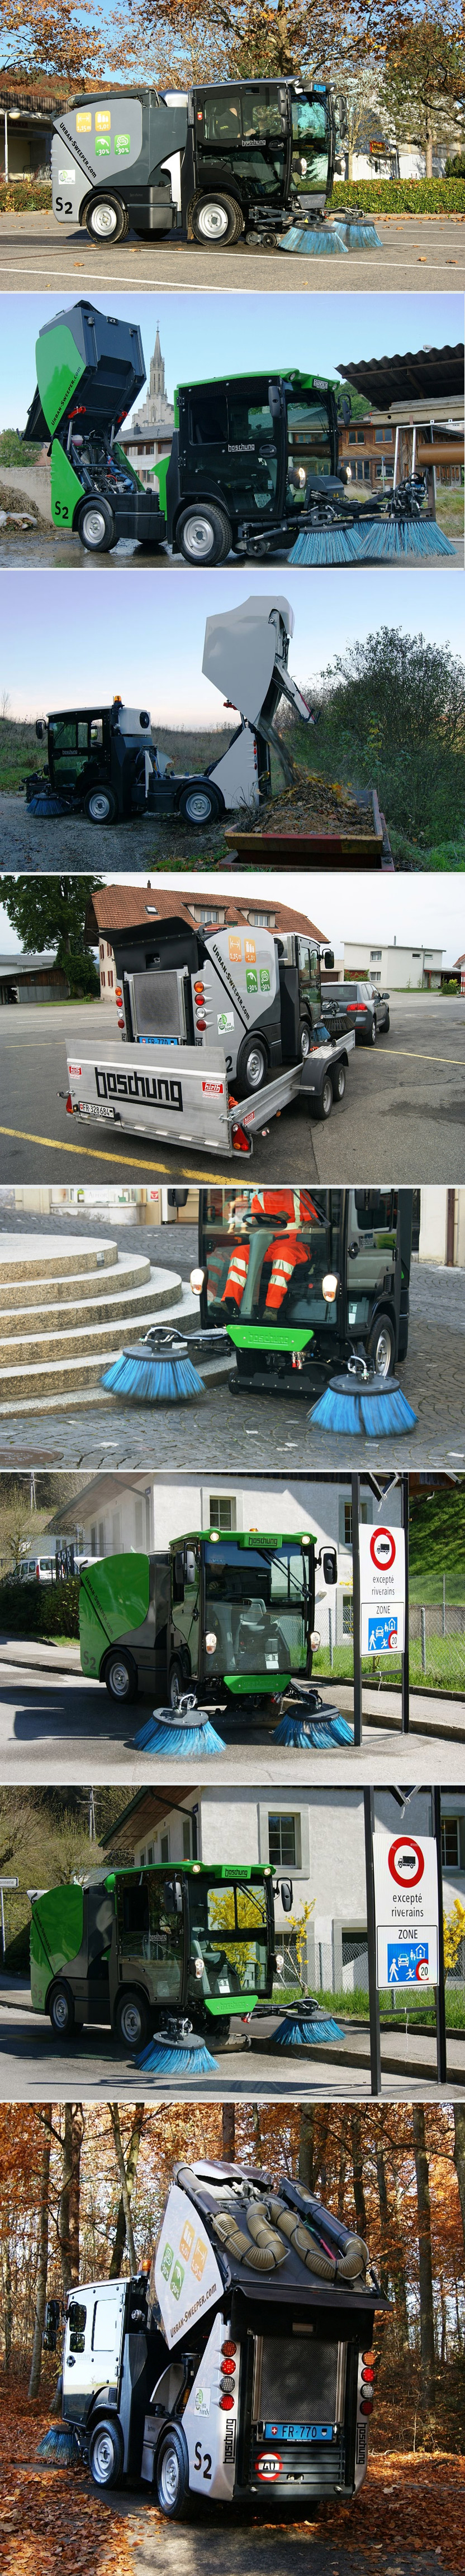 Geni Meydan, Park ve Yaprak Sprge Makinesi Boschung S2 Urban Sweeper